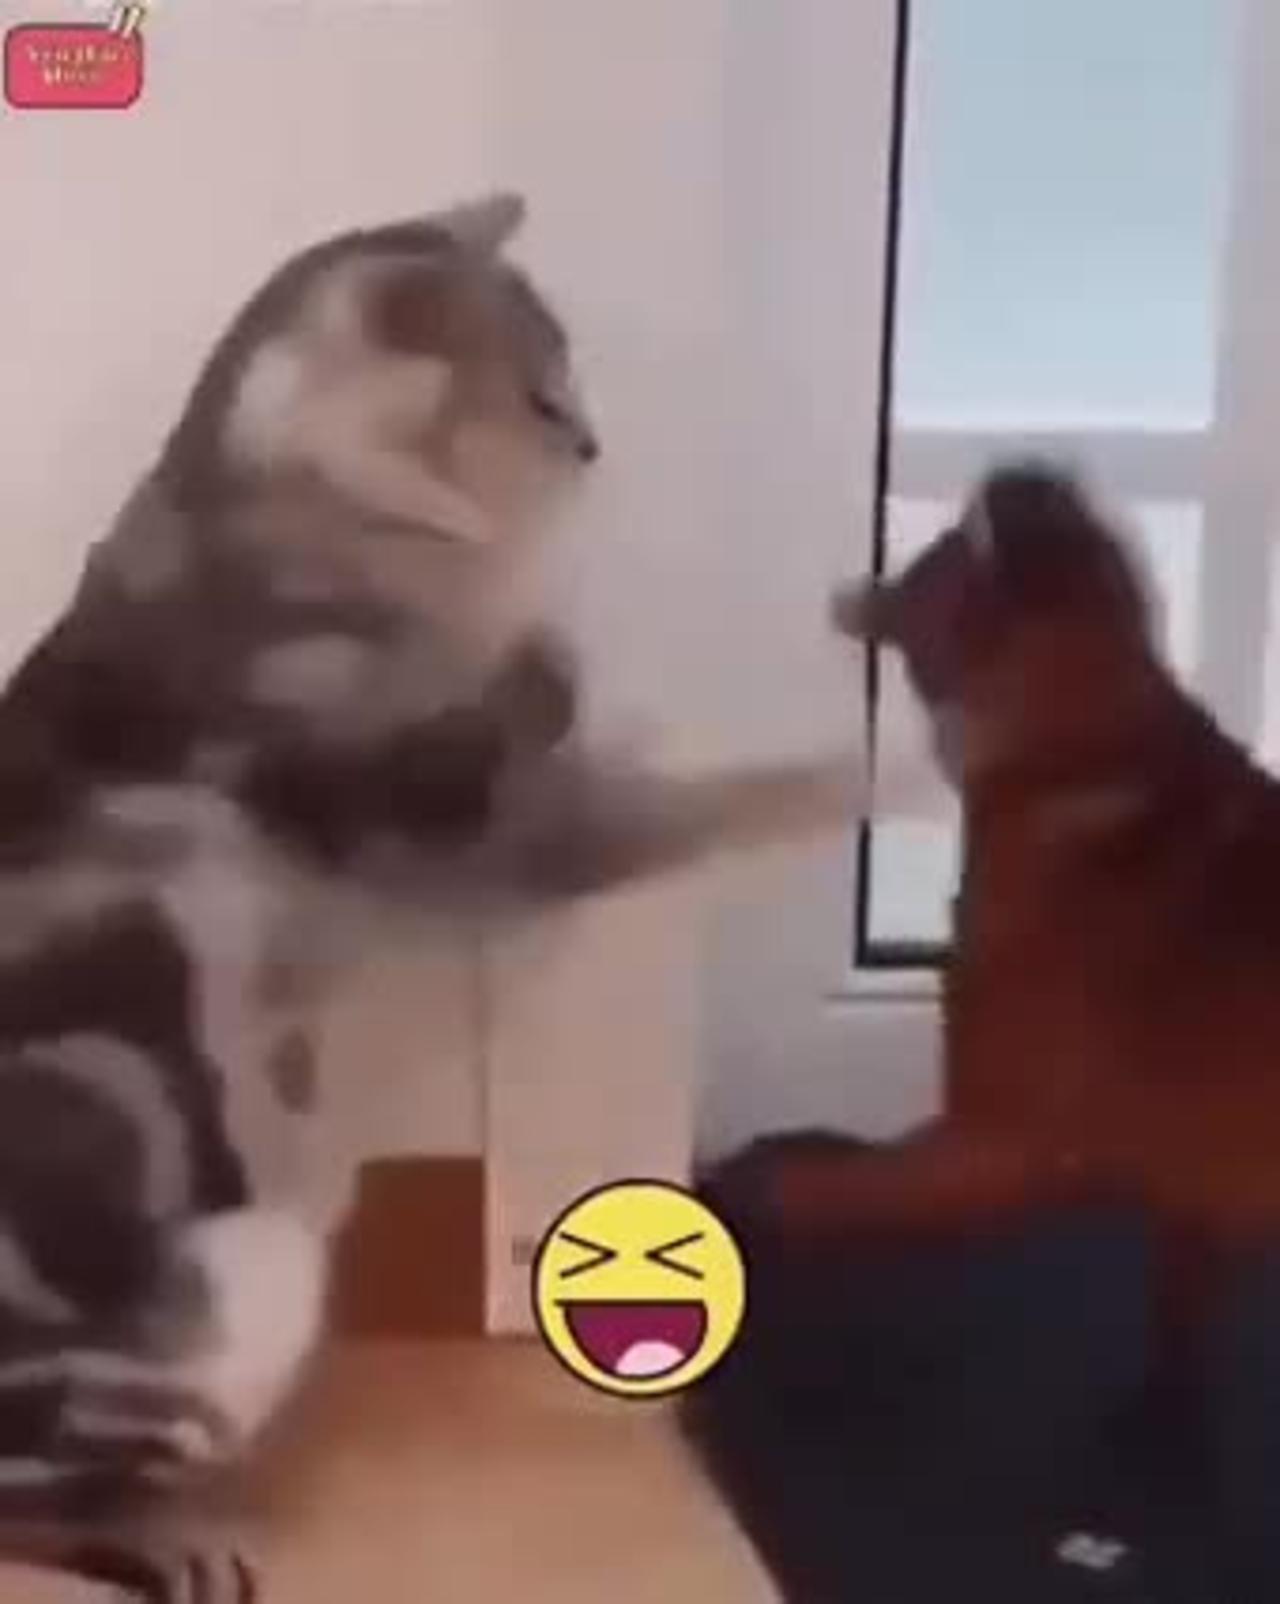 Boxer cat vs dog